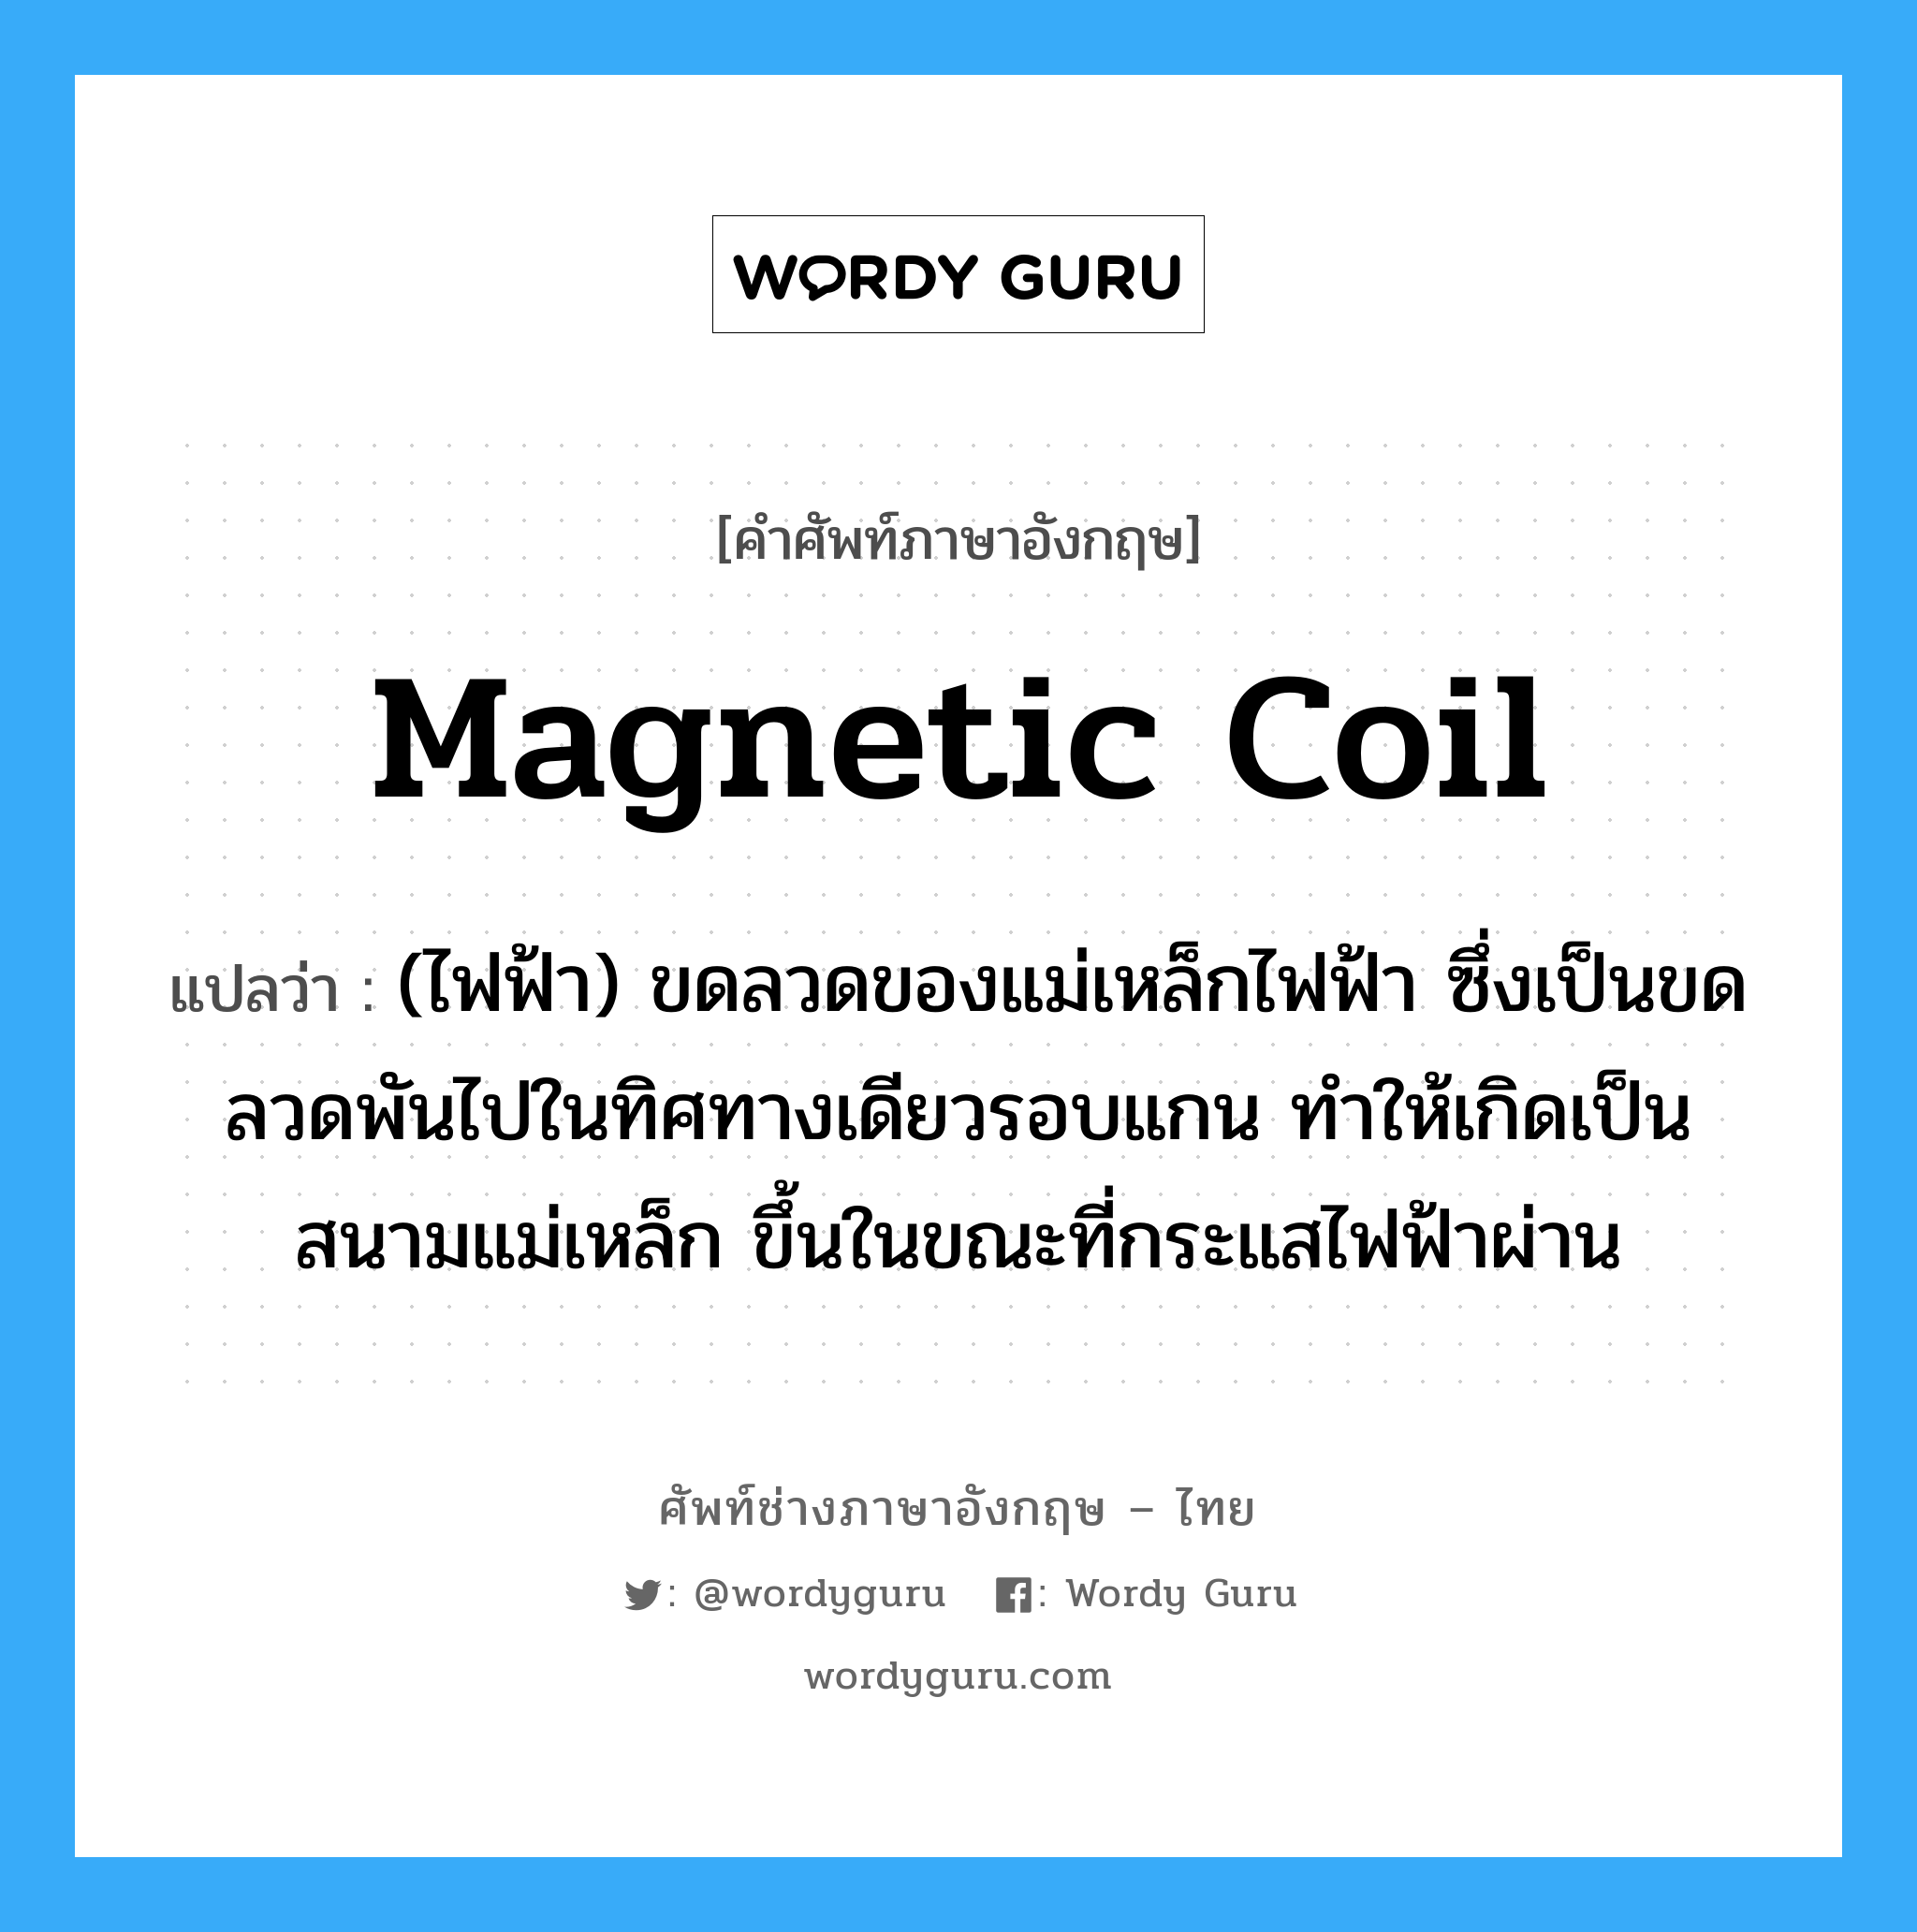 magnetic coil แปลว่า?, คำศัพท์ช่างภาษาอังกฤษ - ไทย magnetic coil คำศัพท์ภาษาอังกฤษ magnetic coil แปลว่า (ไฟฟ้า) ขดลวดของแม่เหล็กไฟฟ้า ซึ่งเป็นขดลวดพันไปในทิศทางเดียวรอบแกน ทำให้เกิดเป็นสนามแม่เหล็ก ขึ้นในขณะที่กระแสไฟฟ้าผ่าน